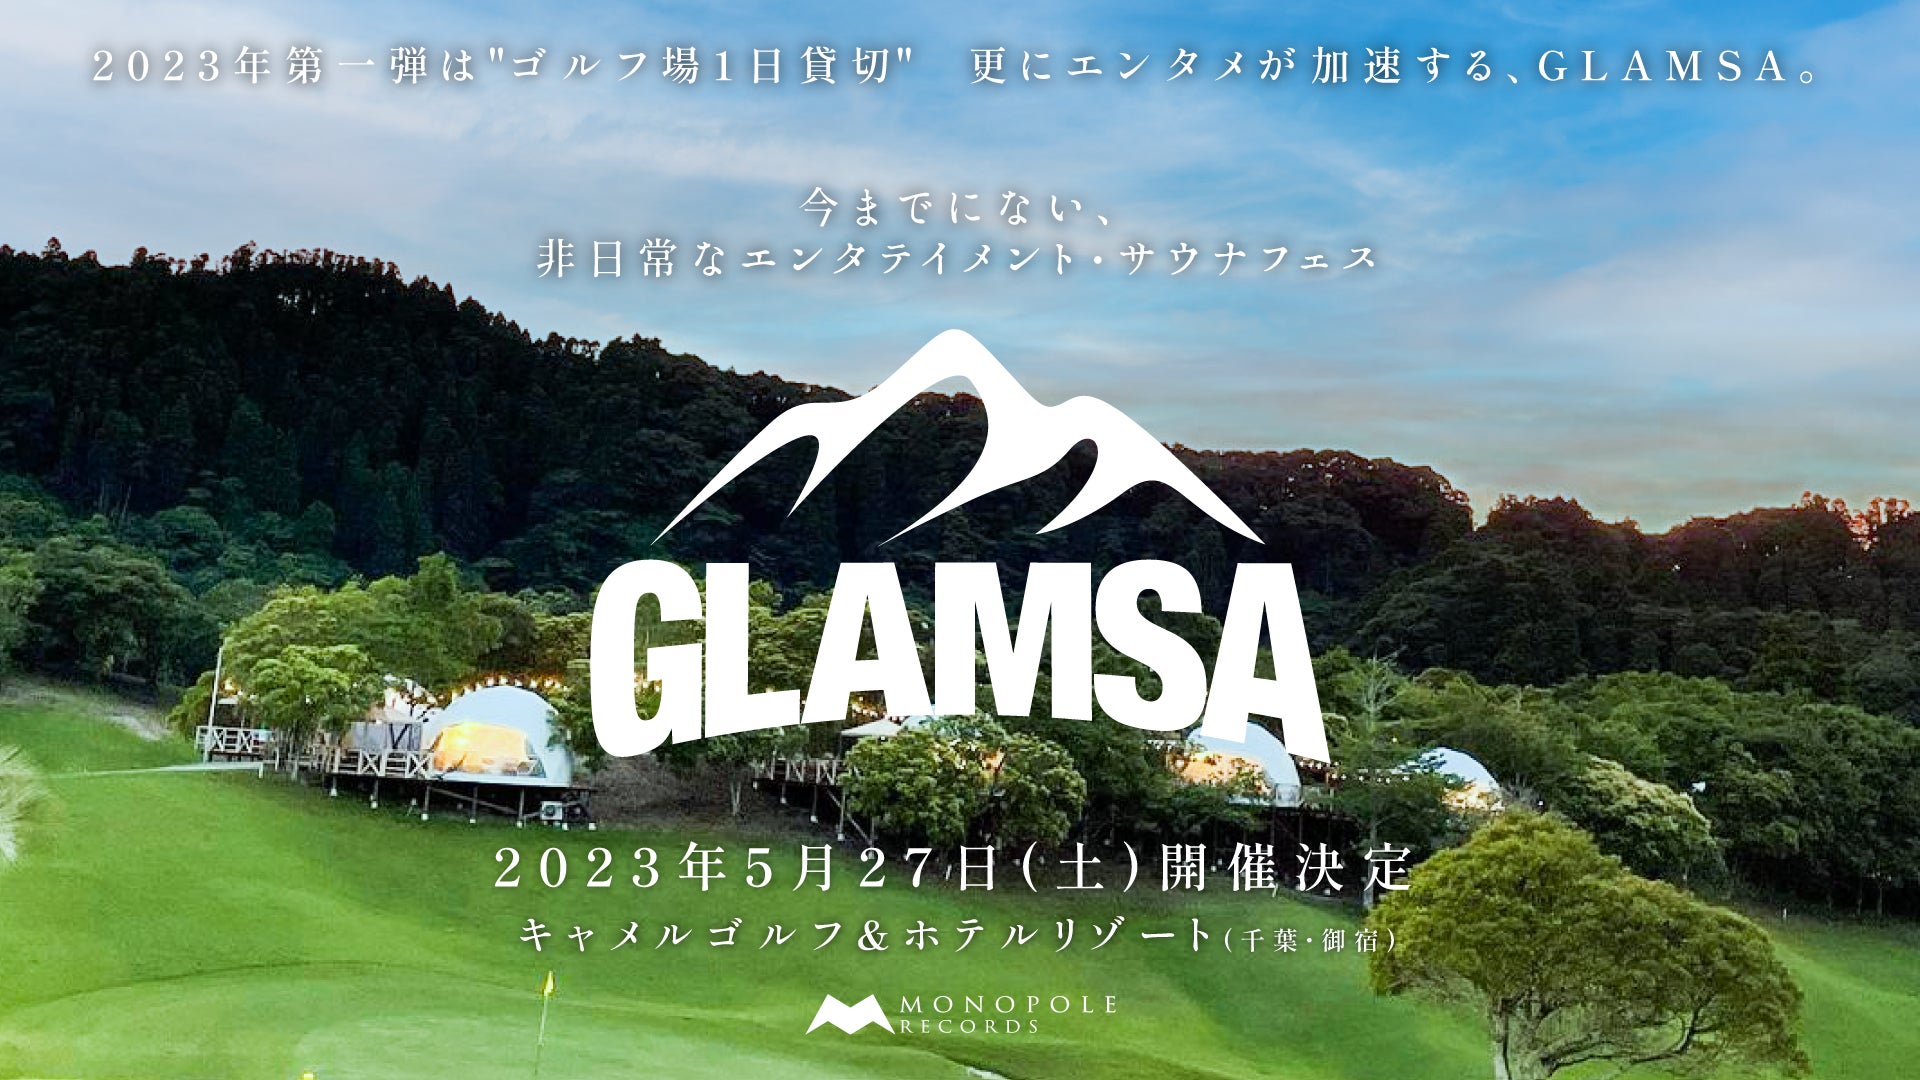 昨年大好評を博したエンタテインメント・サウナフェス「GLAMSA」の第二回開催が決定！千葉県のゴルフリゾート施設で楽しむ極上のグランピング×サウナ×音楽フェス。のサブ画像1